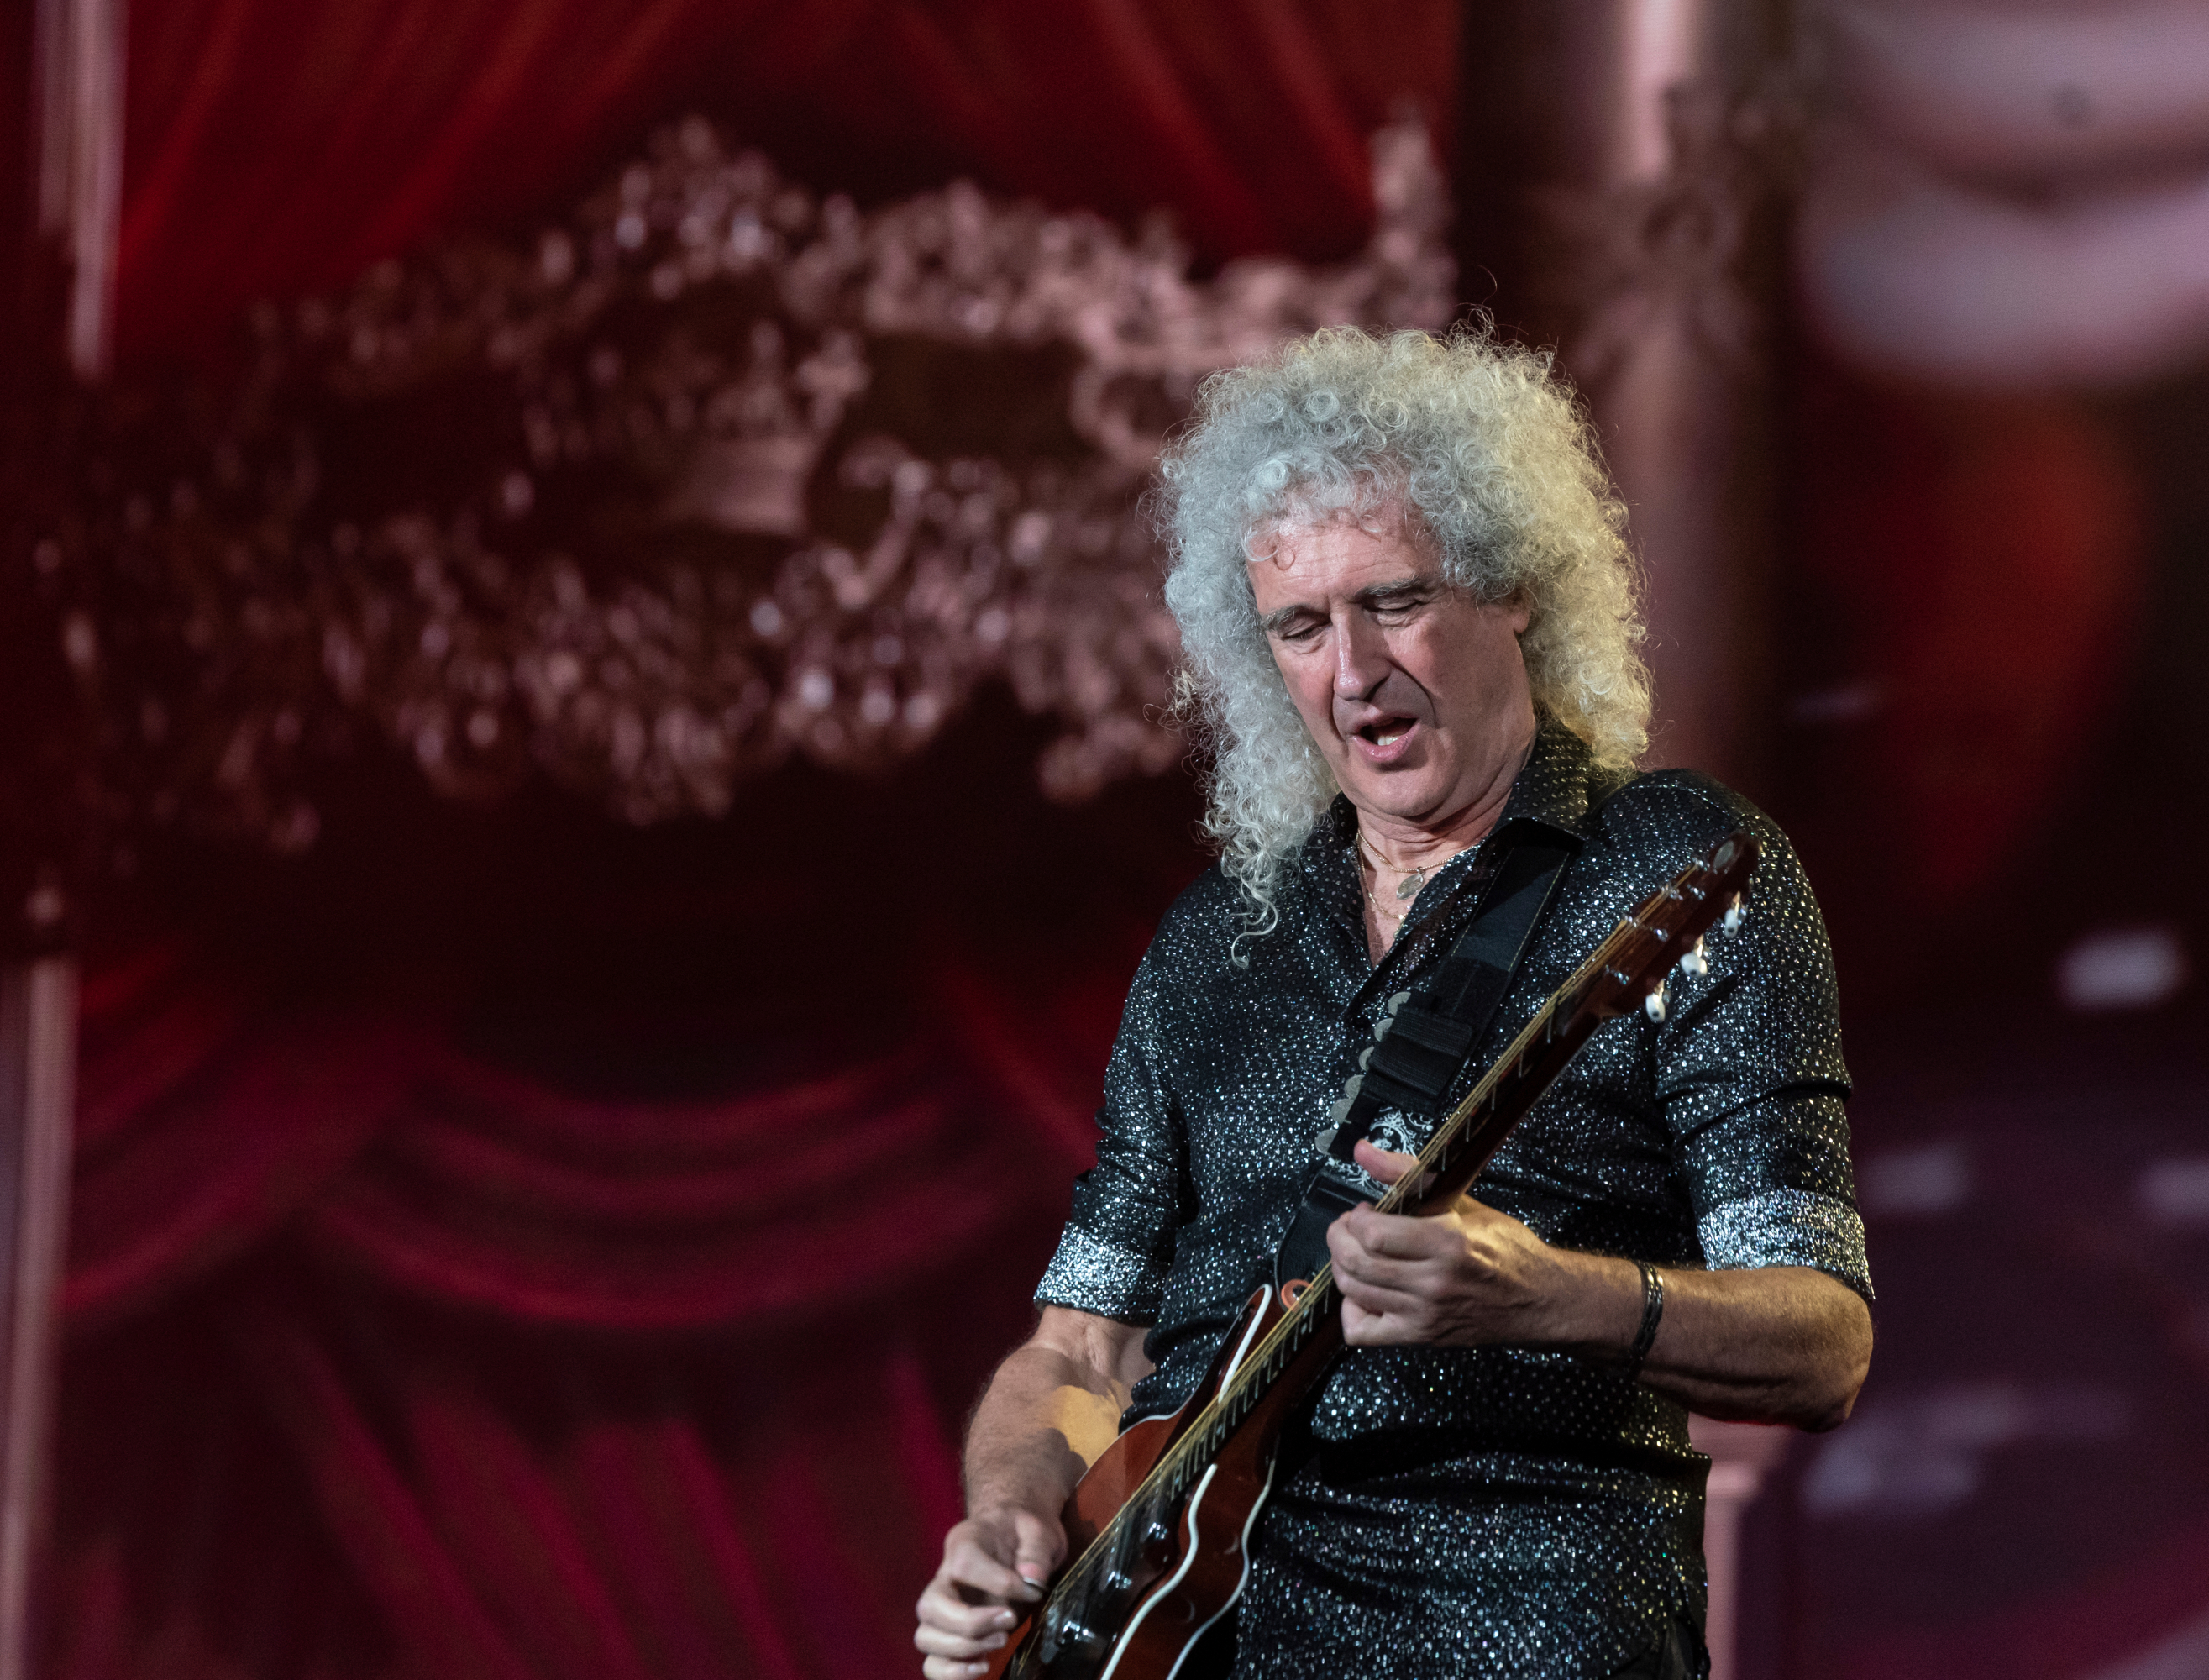 La inspiradora historia de Brian May, el guitarrista de Queen que colabora con la NASA / Shutterstock